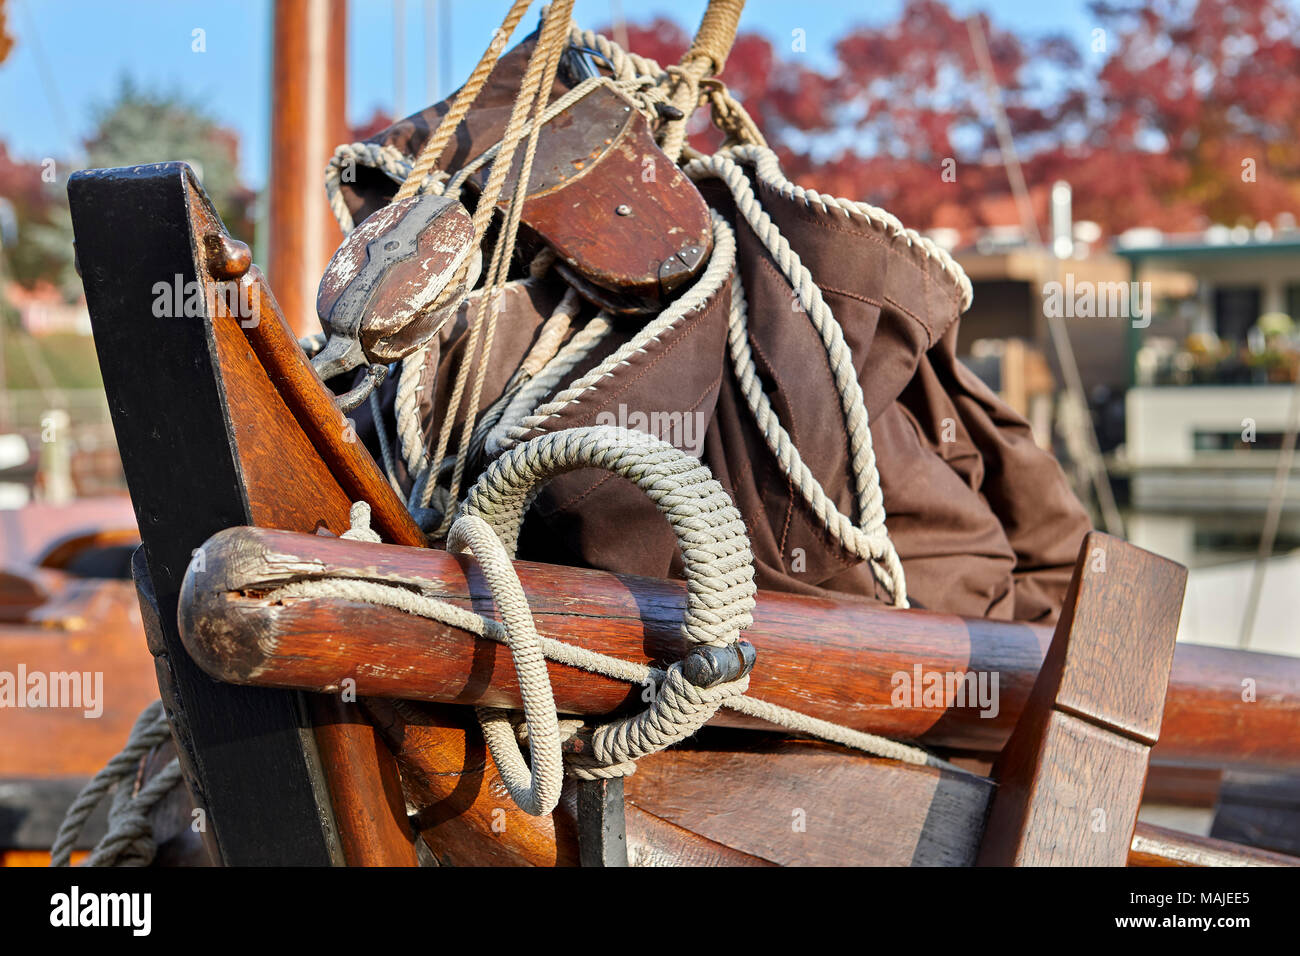 Immagine astratta della vela olandese Tjalk ad Amsterdam, nei Paesi Bassi, Olanda Foto Stock